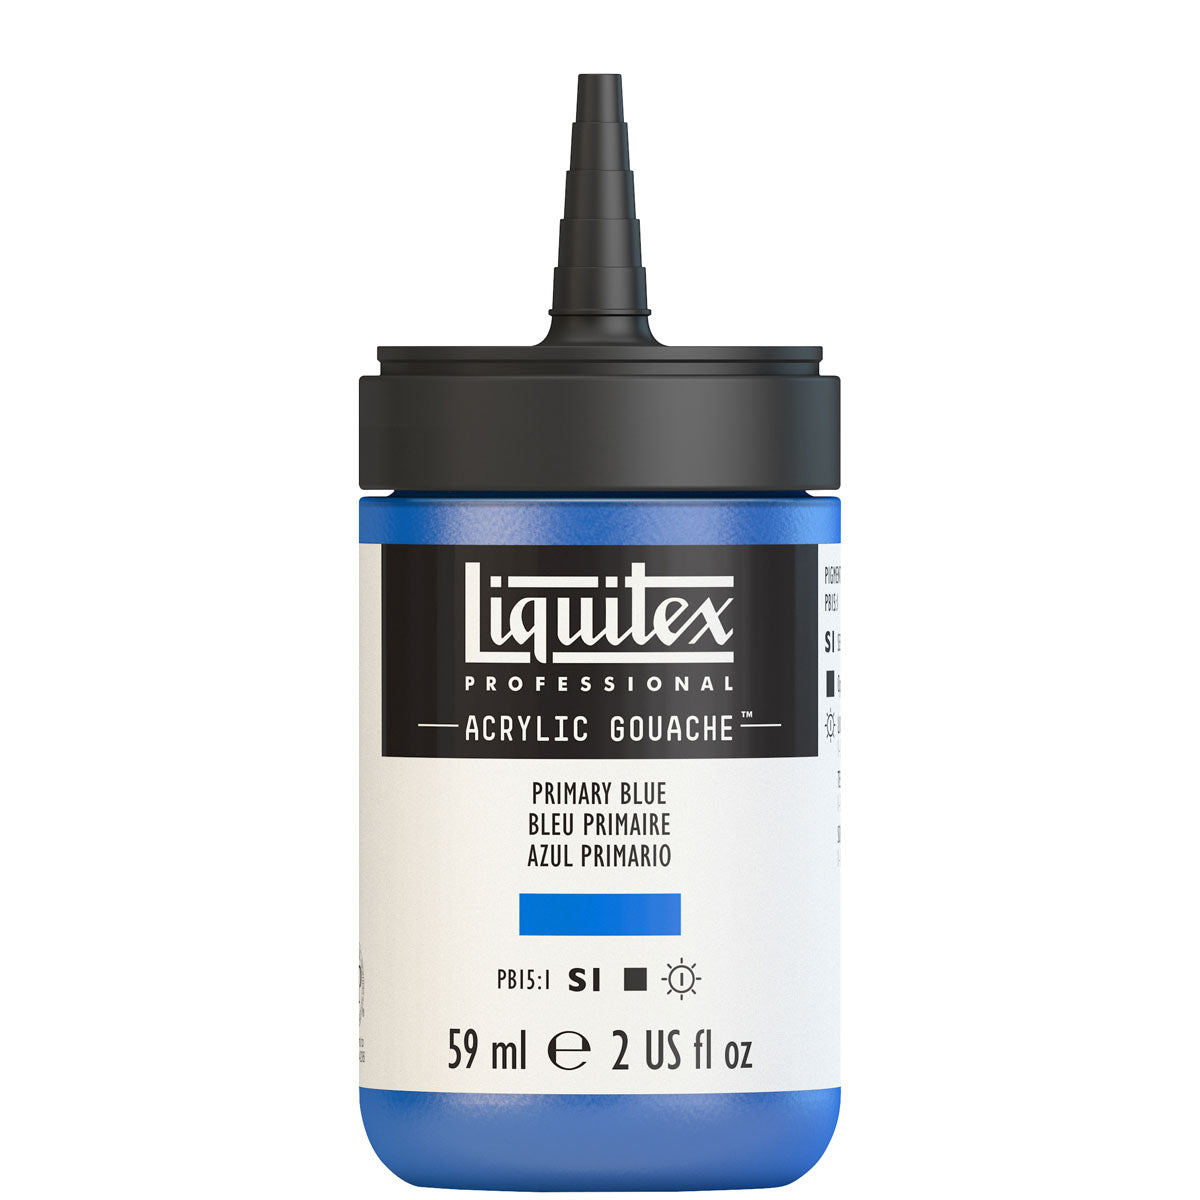 Liquitex - Acrylic Gouache 59ml S1 - Primary Blue